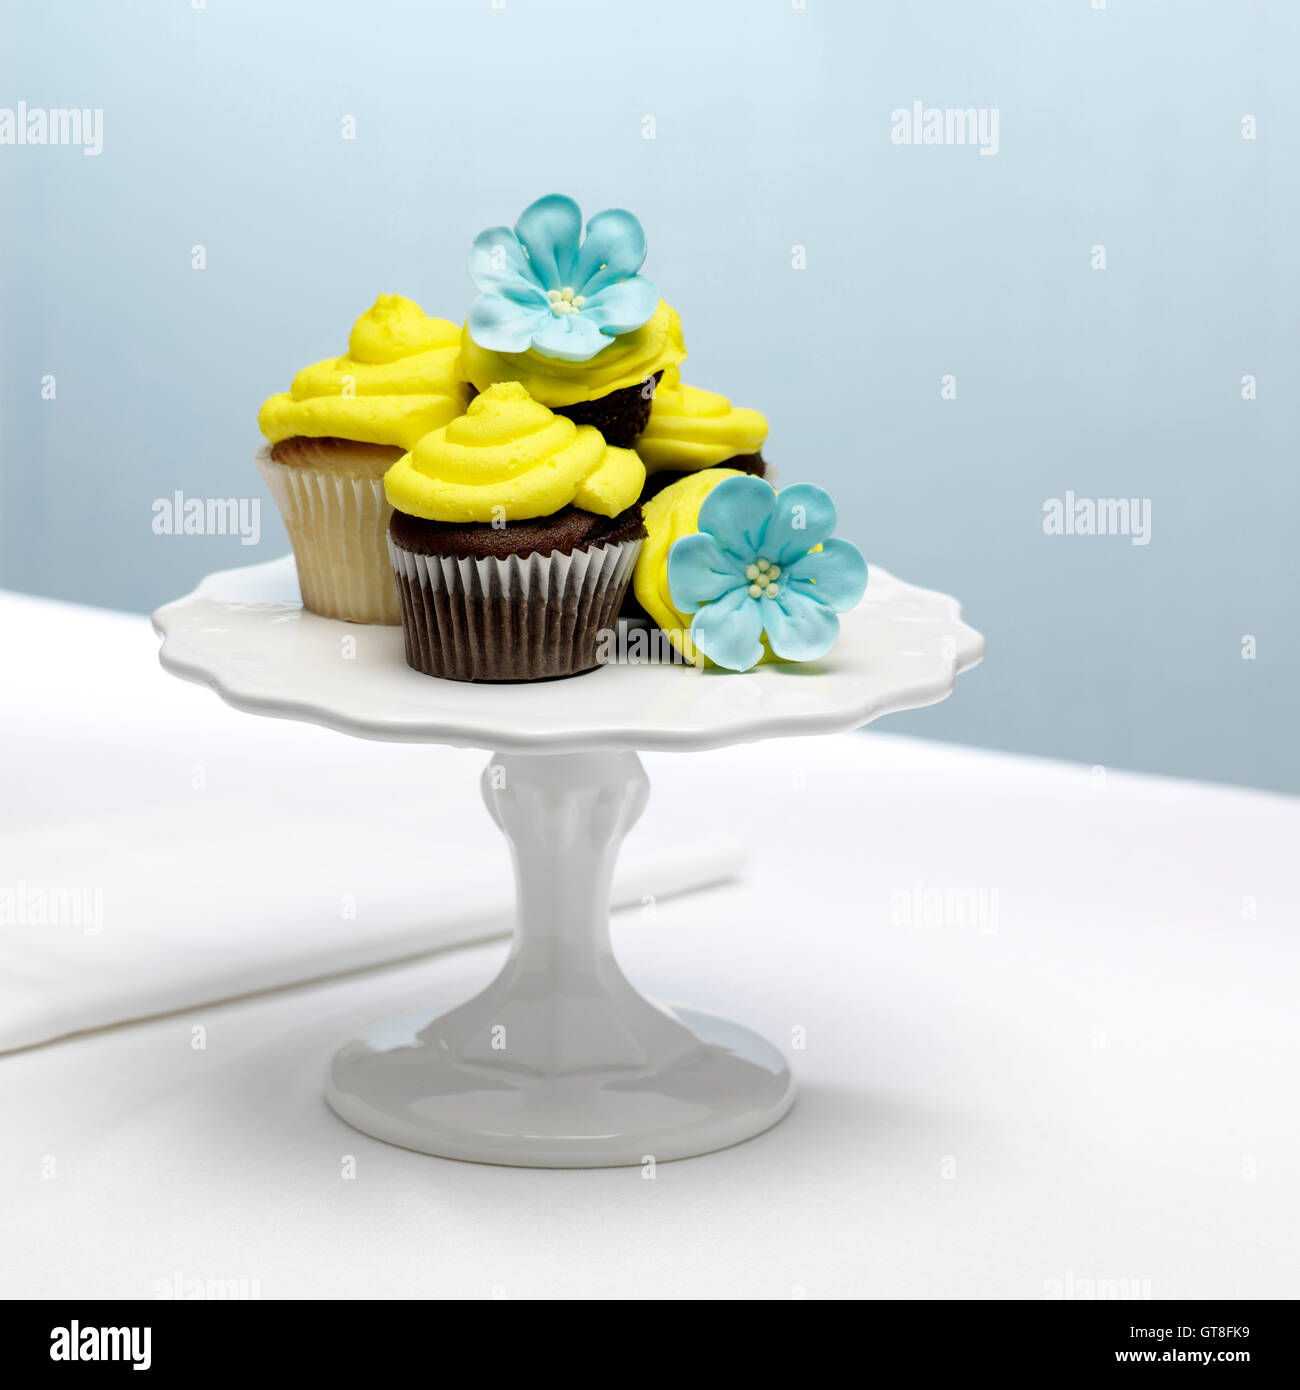 Cioccolato e vaniglia tortine con glassa di colore giallo e blu di fiori di zucchero sulla torta Stand Foto Stock